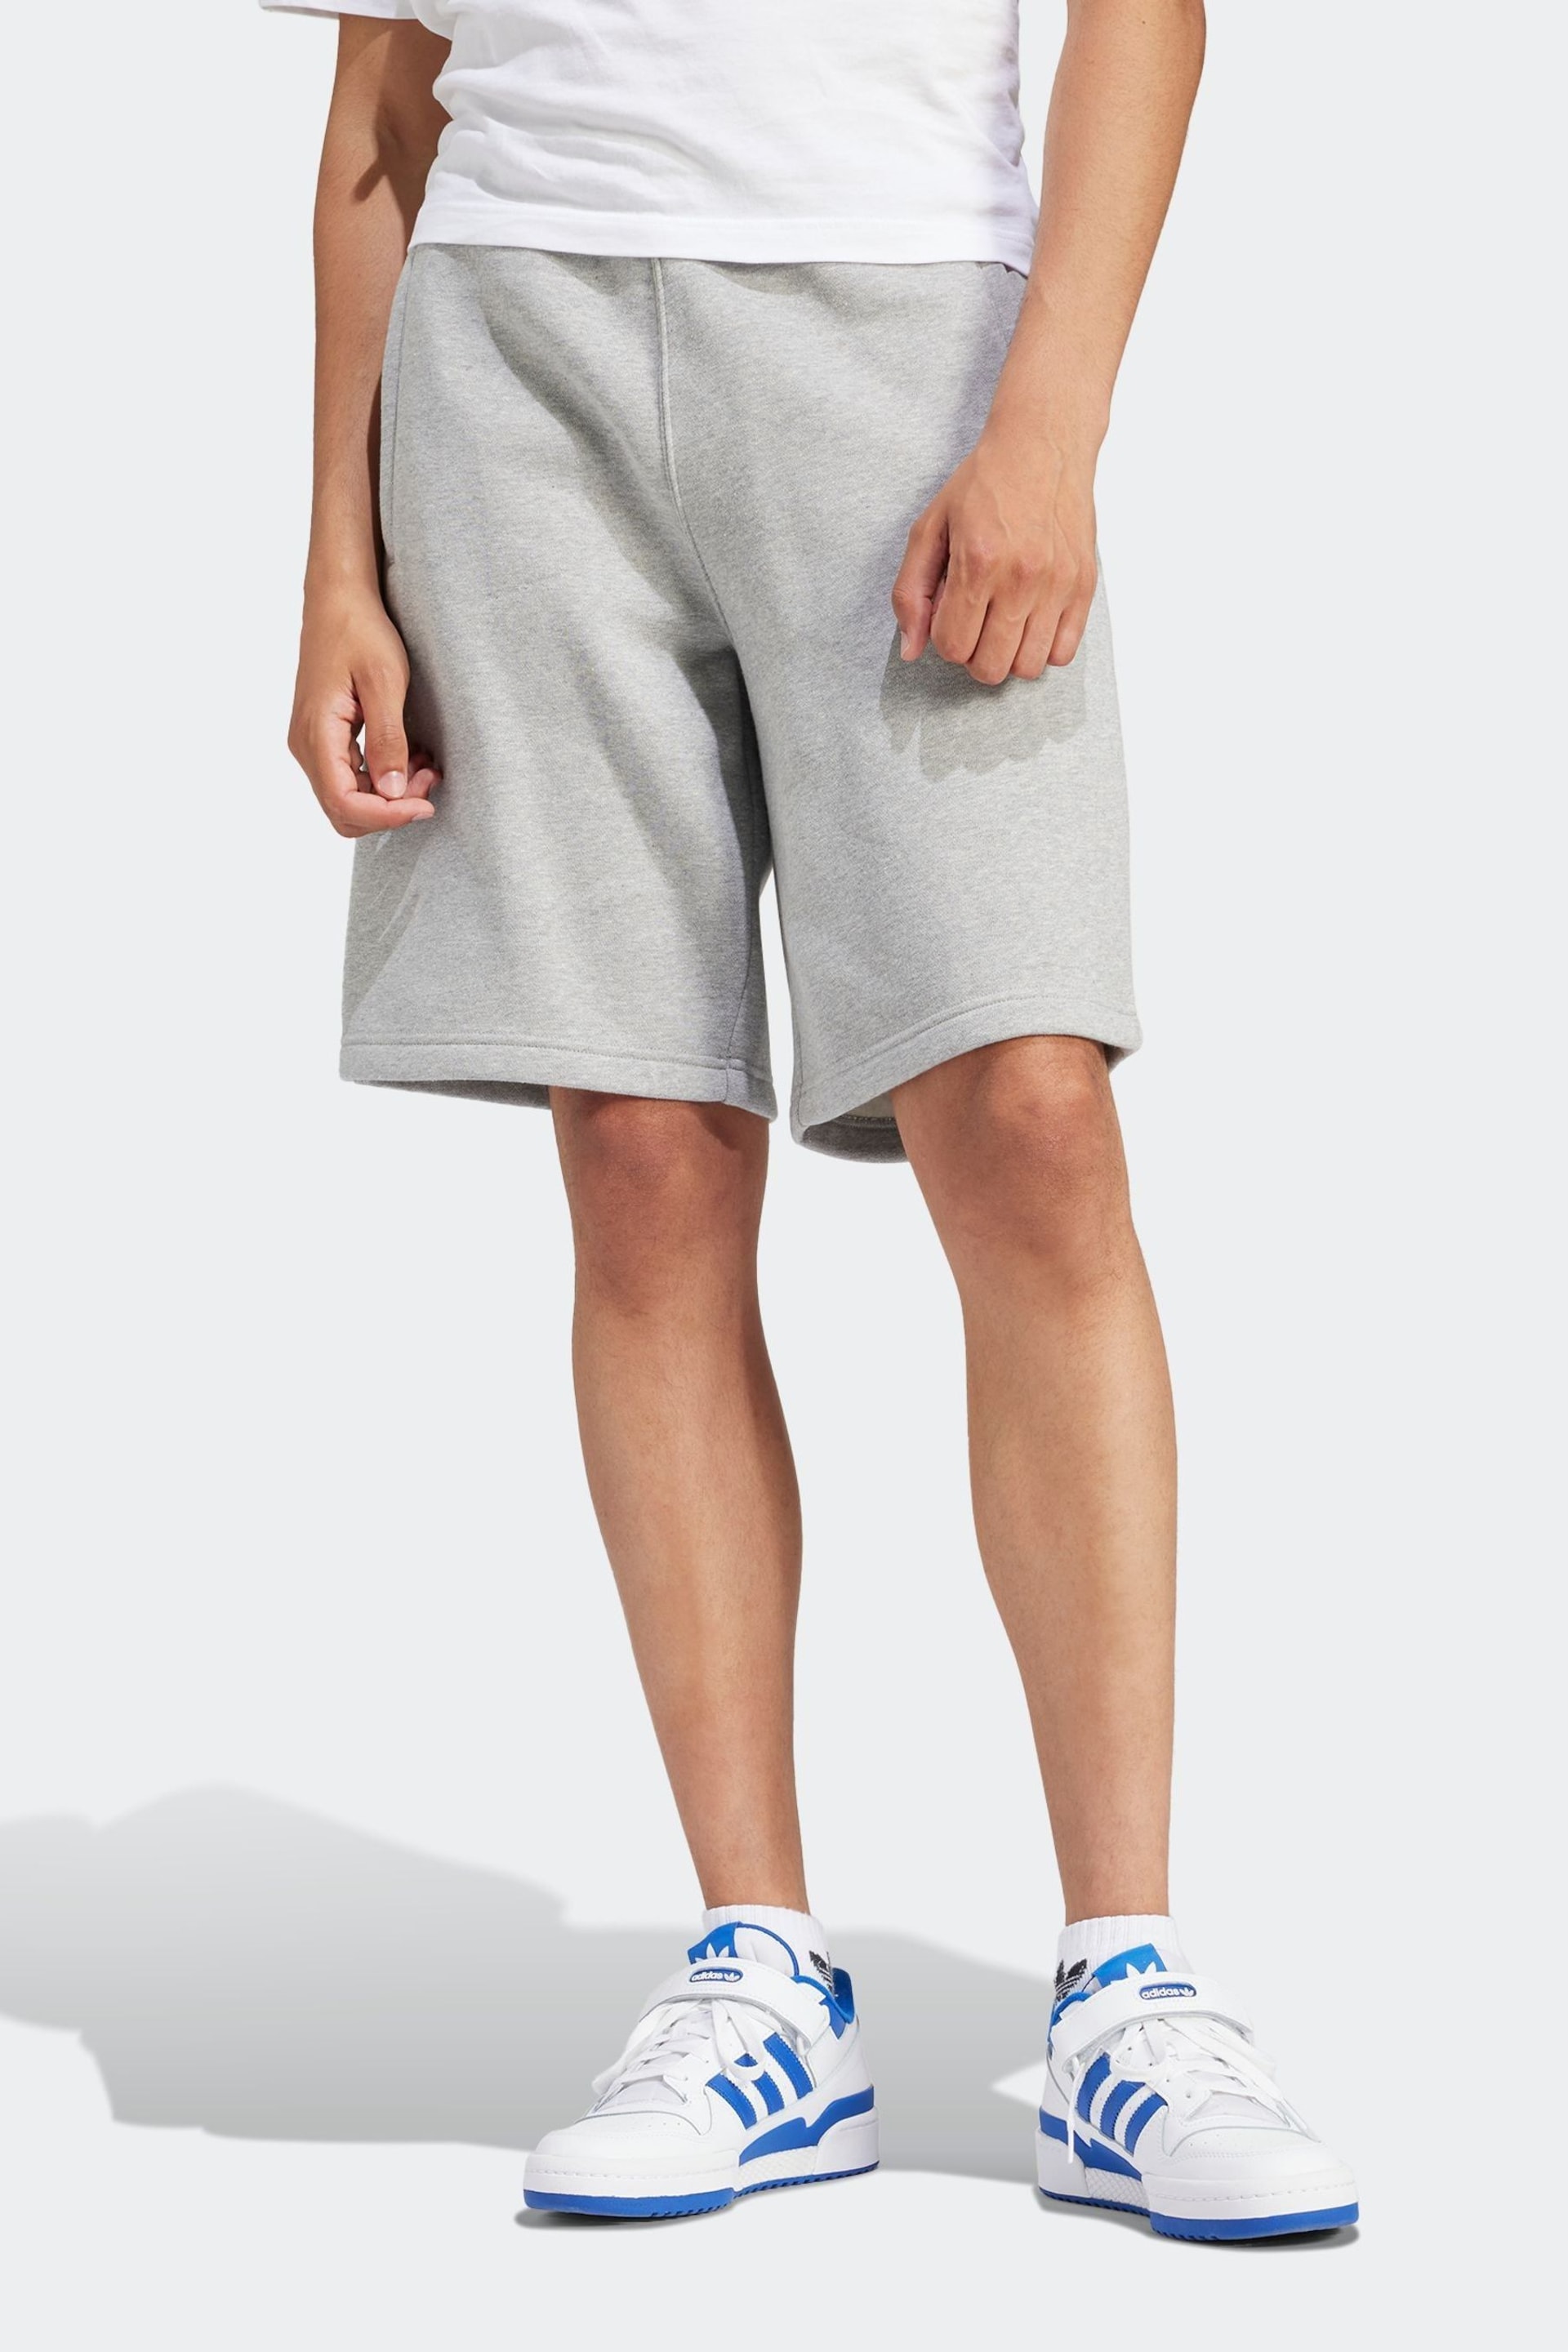 adidas Originals Trefoil Essentials Shorts - Image 1 of 6